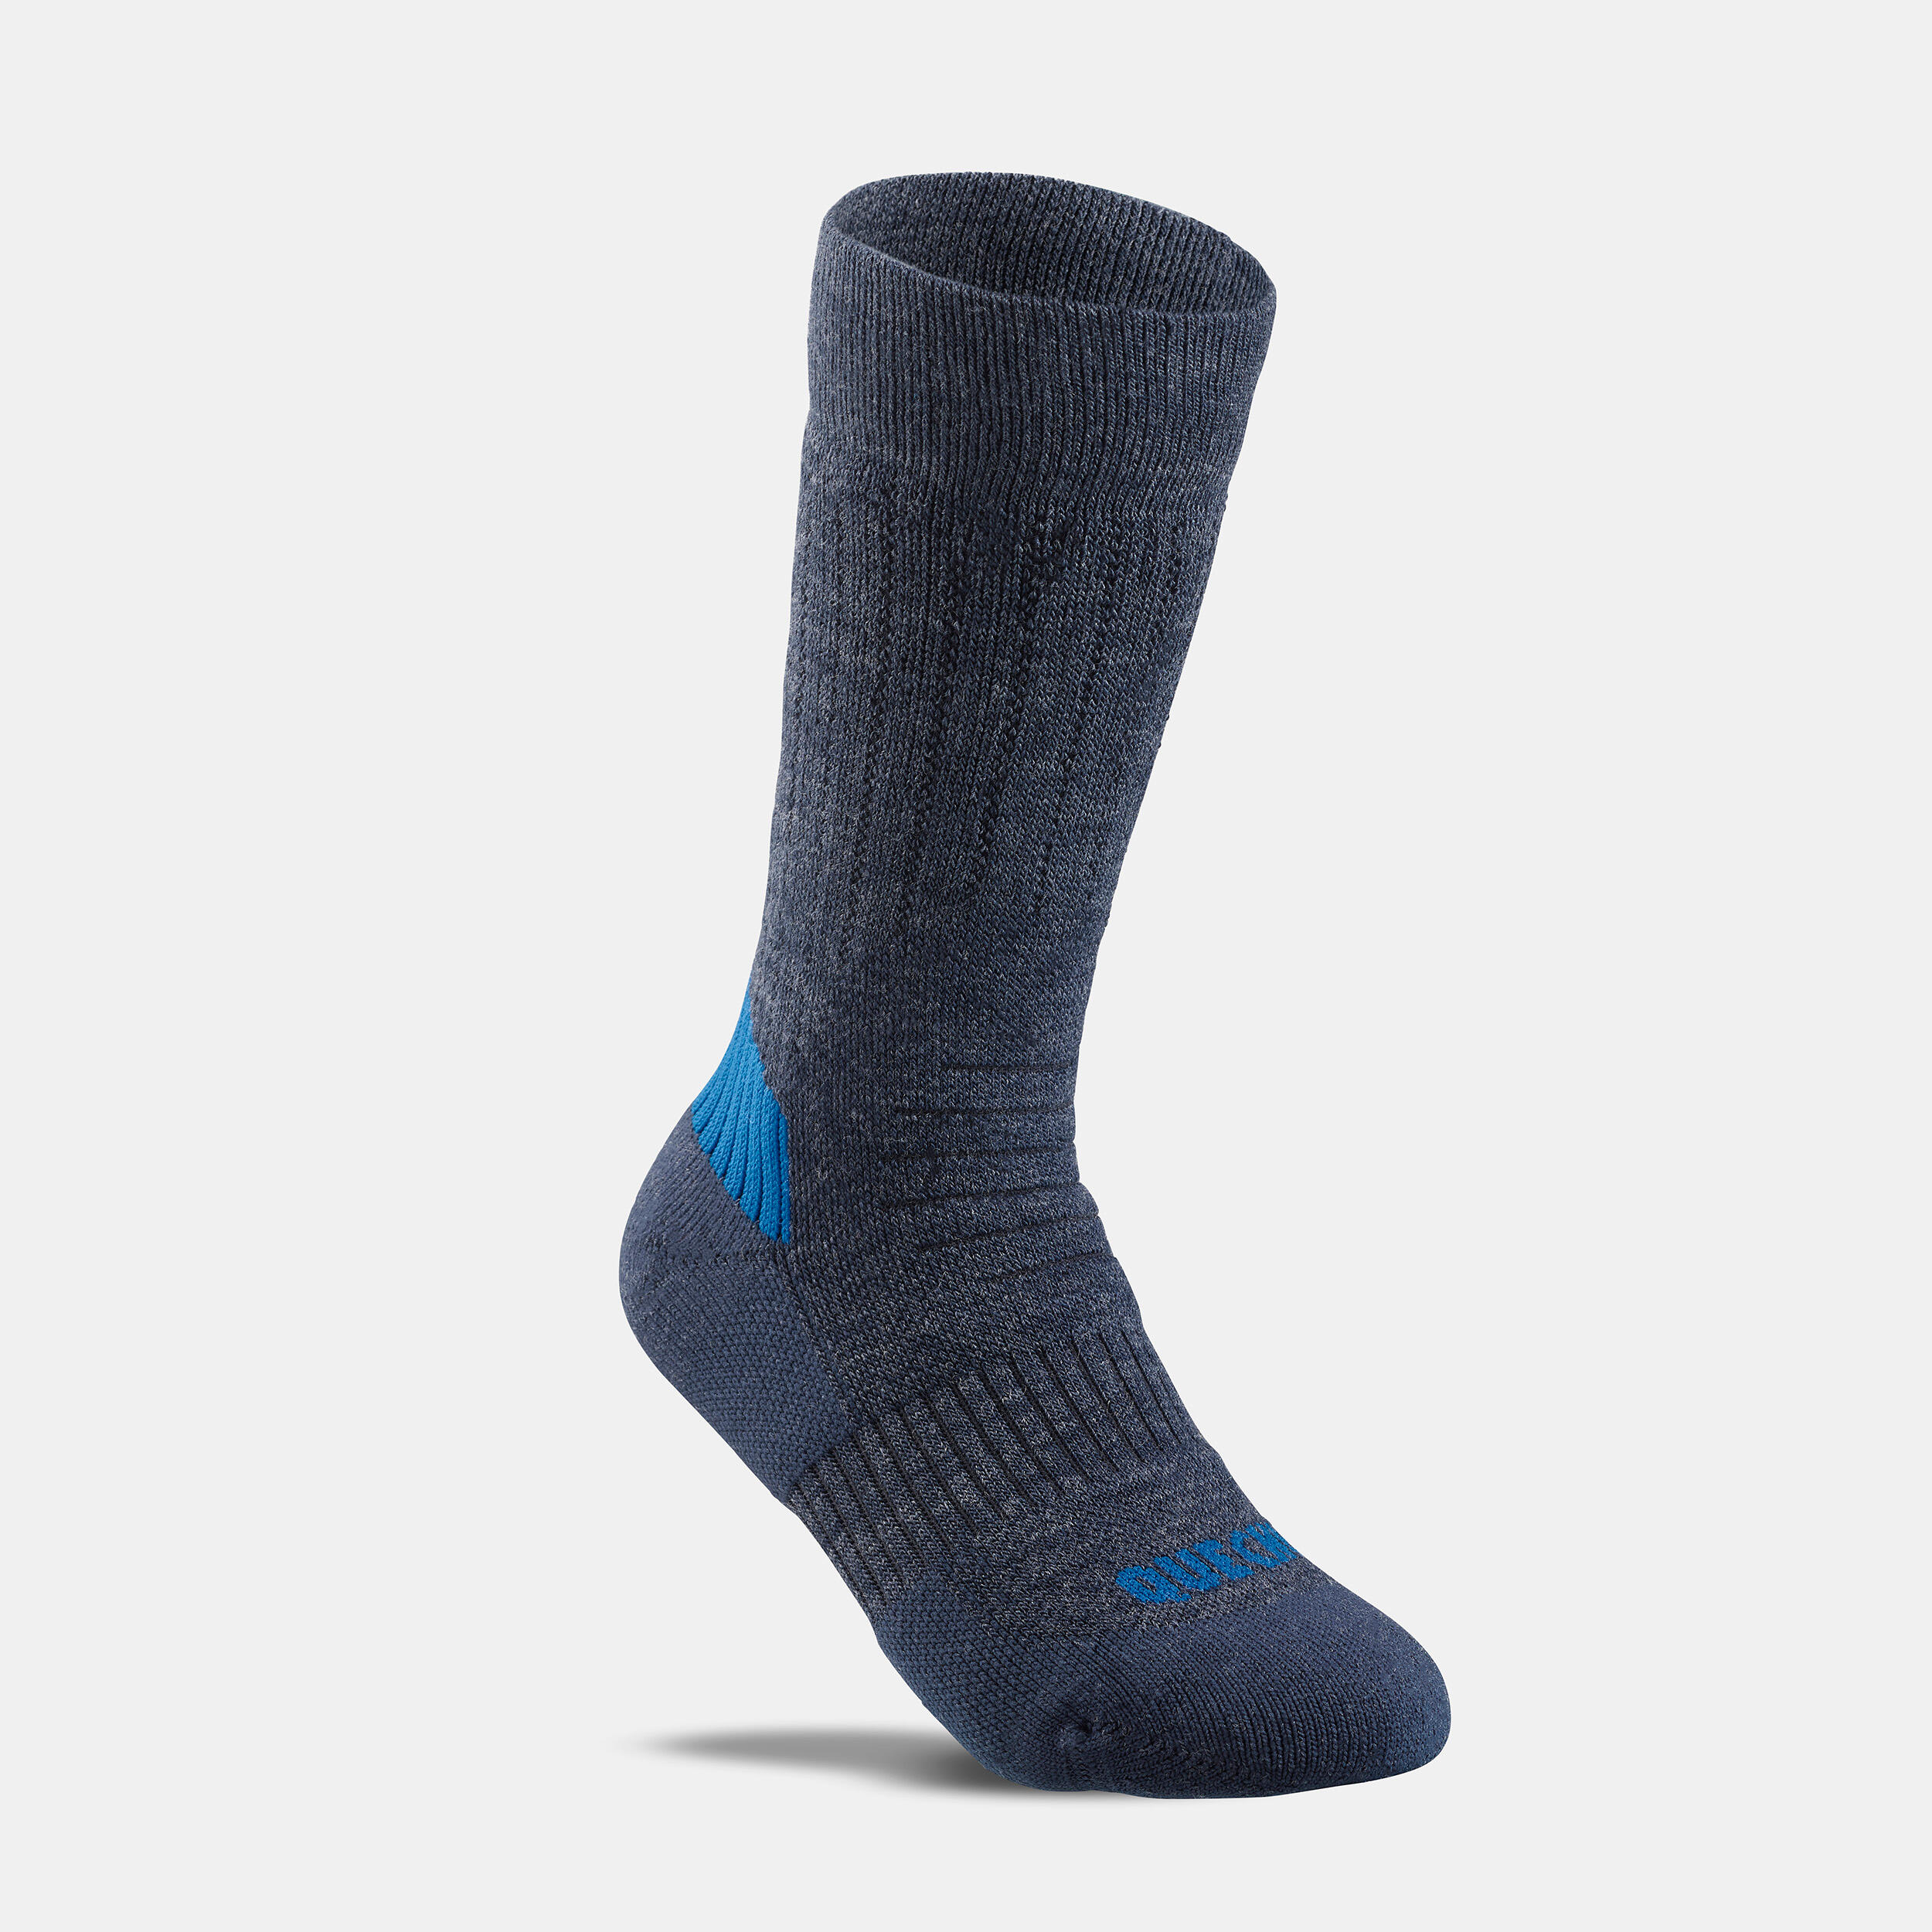 Kids’ Warm Hiking Socks SH100 Mid 2 Pairs 7/9